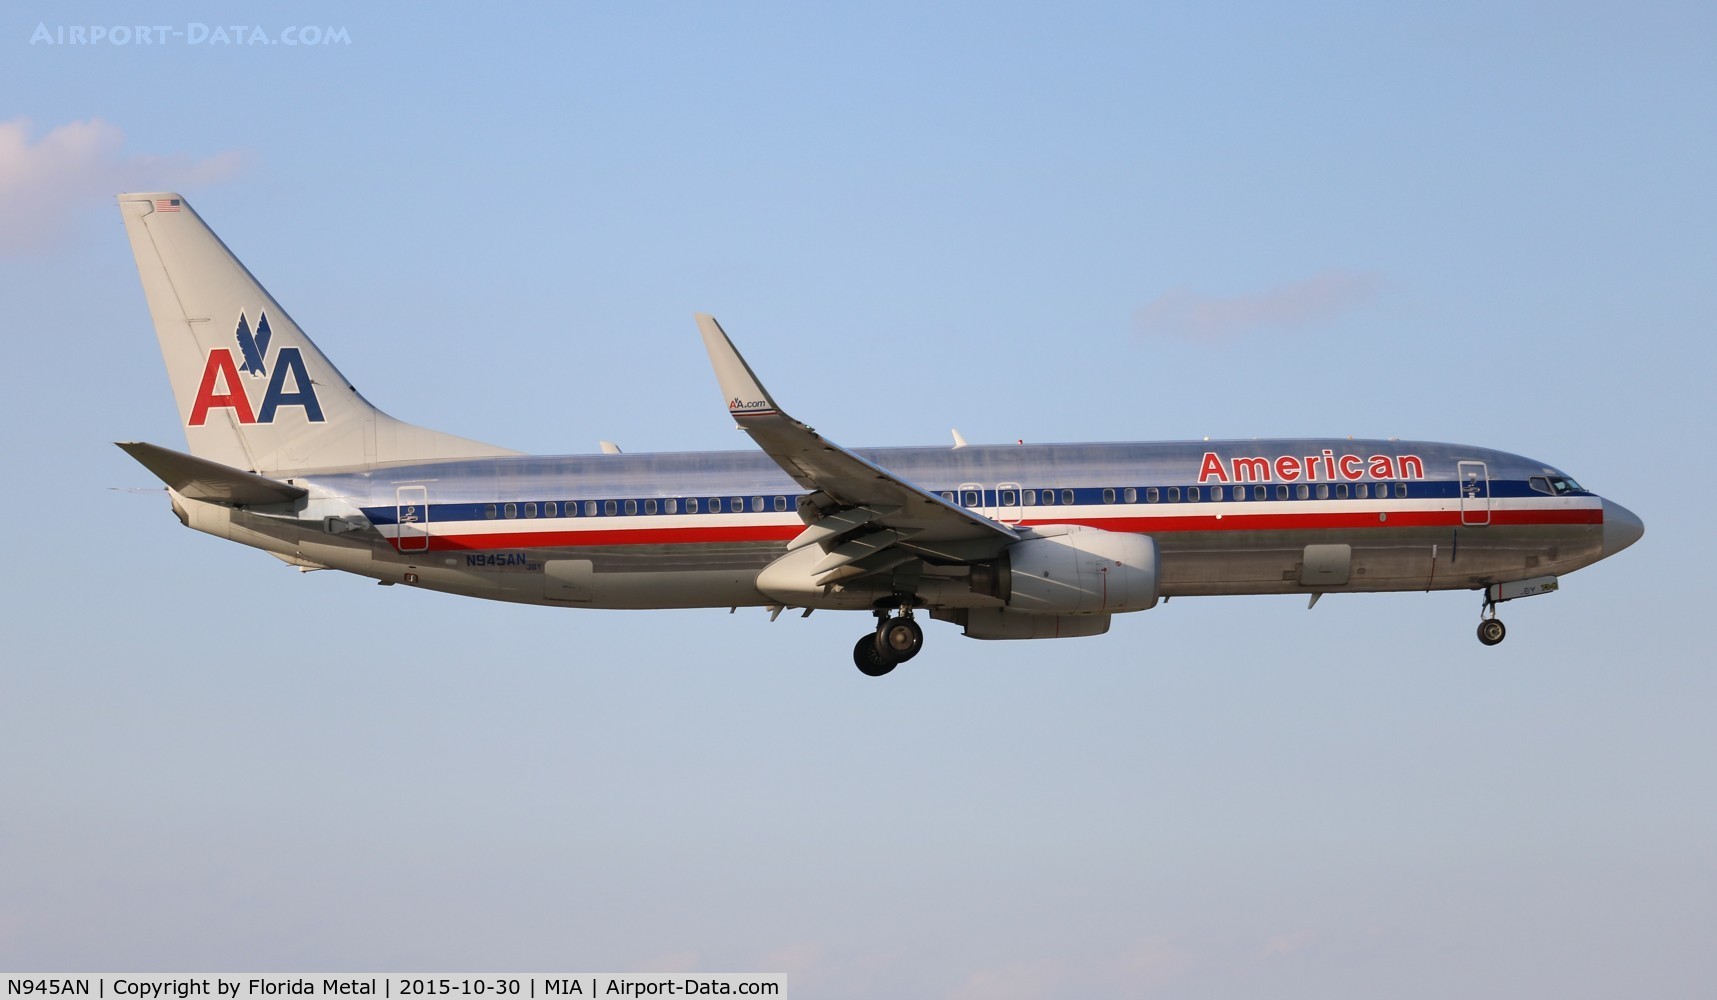 N945AN, 2000 Boeing 737-823 C/N 30085, American